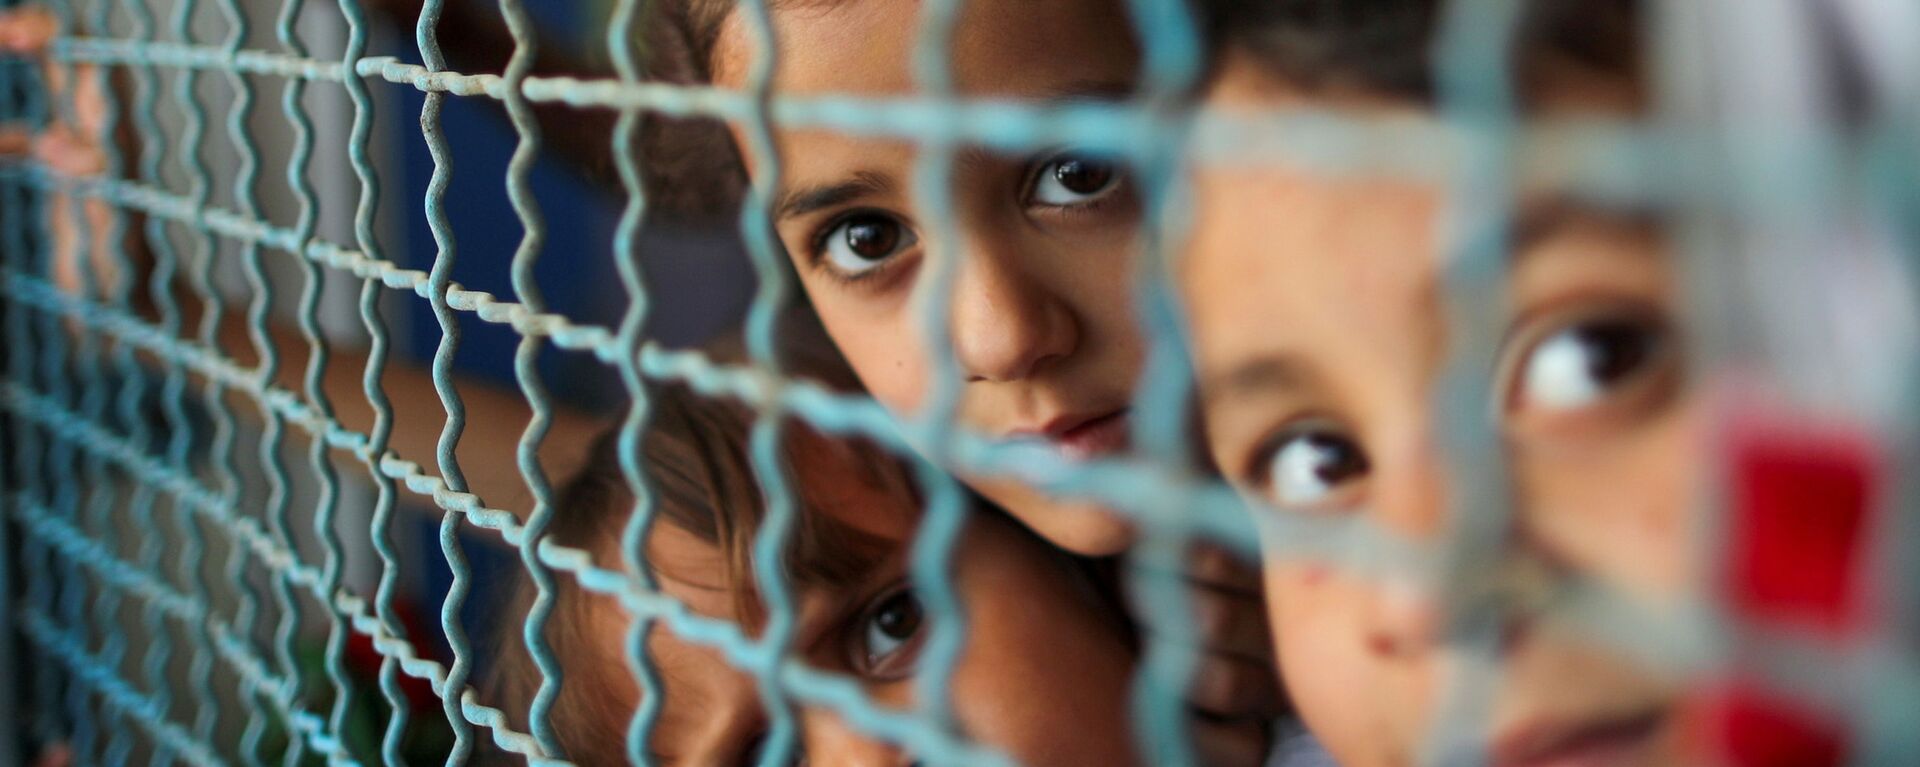 أطفال ينظرون من نافذة مدرسة الأنروا. يذكر أنه نزح ما يقرب 34 ألف من أهالي قطاع غزة إلى مدراس الأونروا بعد قصف الطيران الحربي الإسرائيلي منازلهم، فلسطين بتاريخ 18 مايو 2021 - سبوتنيك عربي, 1920, 28.02.2022